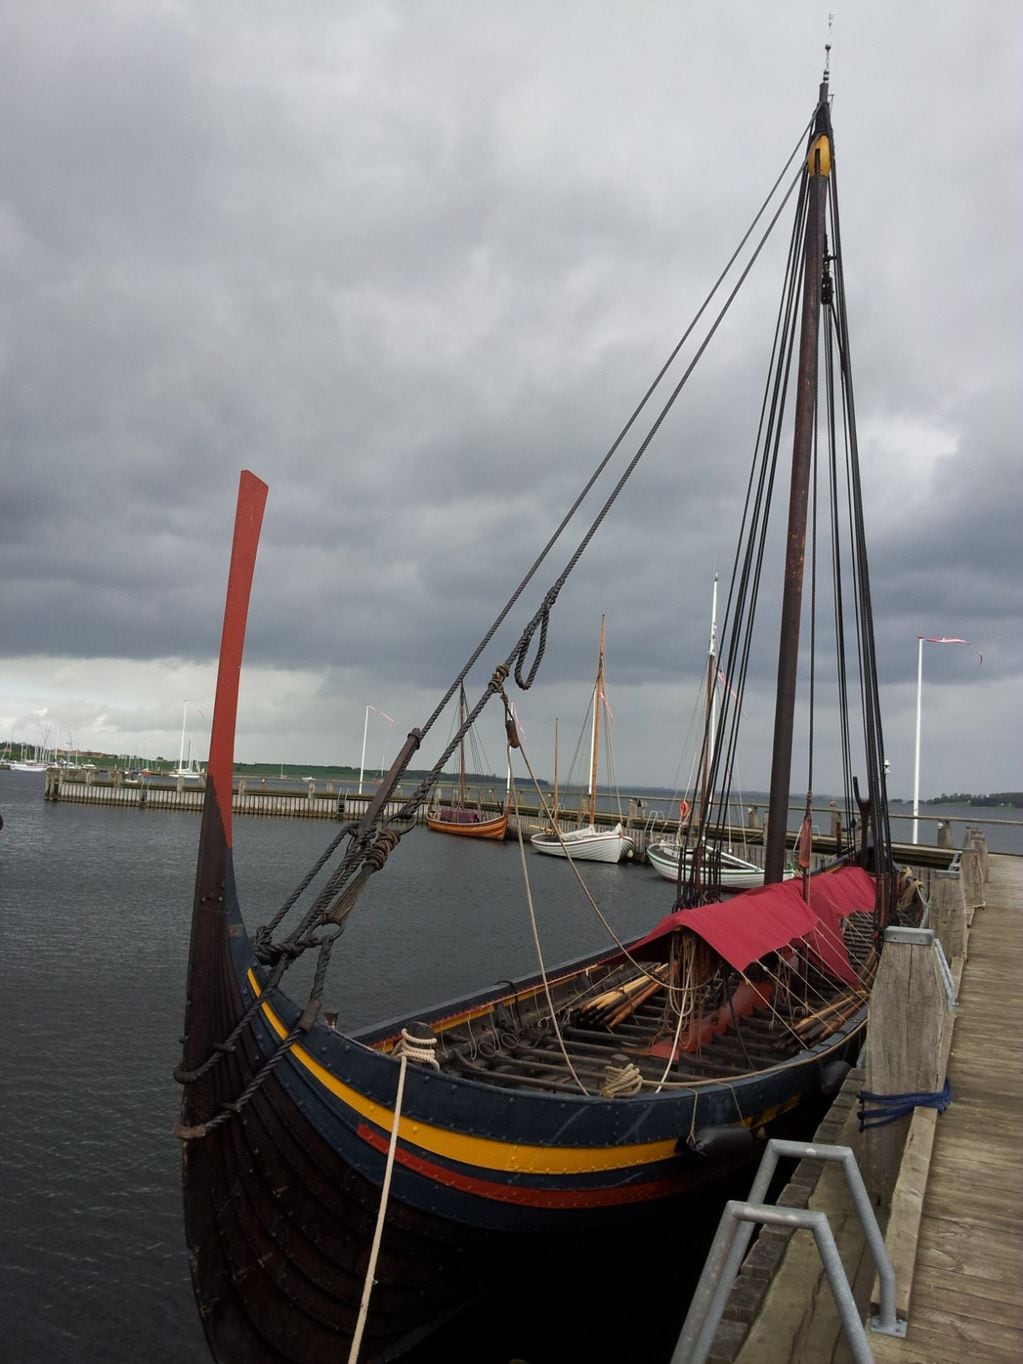 La mendocina que es guía turística entre barcos vikingos y la cuna de la historia de Dinamarca. Gentileza: Carolina Fantozzi.